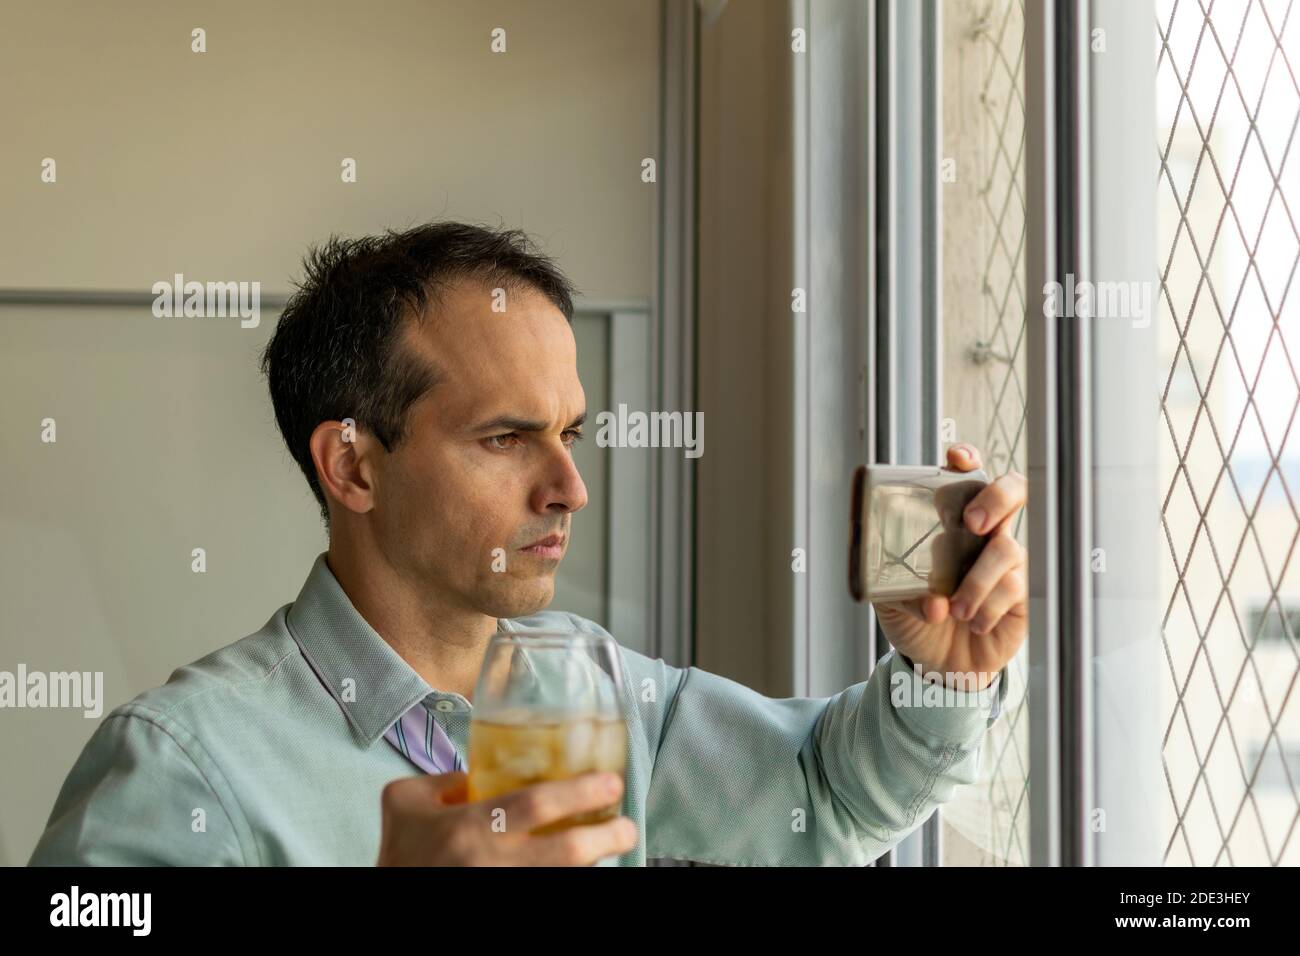 hombre de 44 años, delante de una ventana, tomando un whisky y viendo un vídeo en su smartphone. Foto de stock